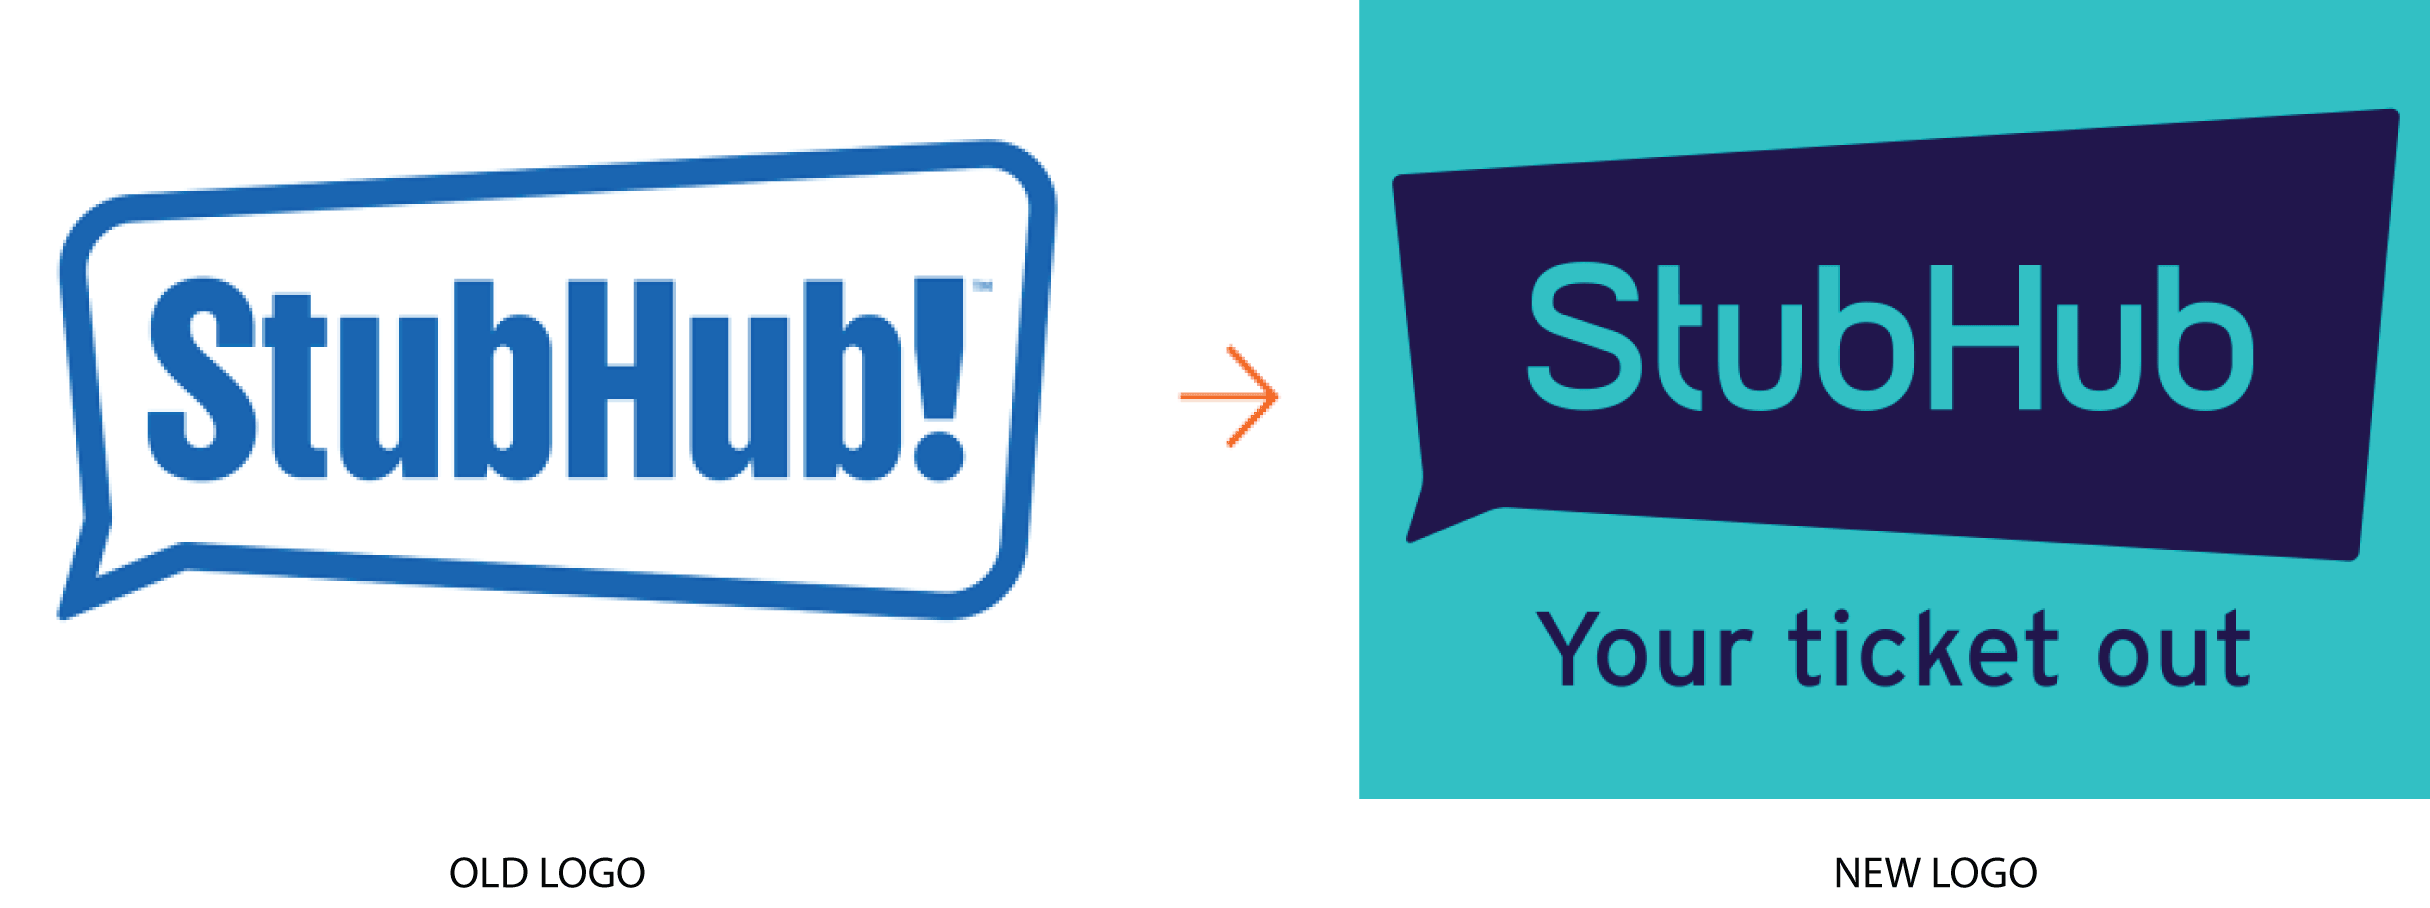 StubHub Logo - Stubhub's Subtle Sub | Articles | LogoLounge